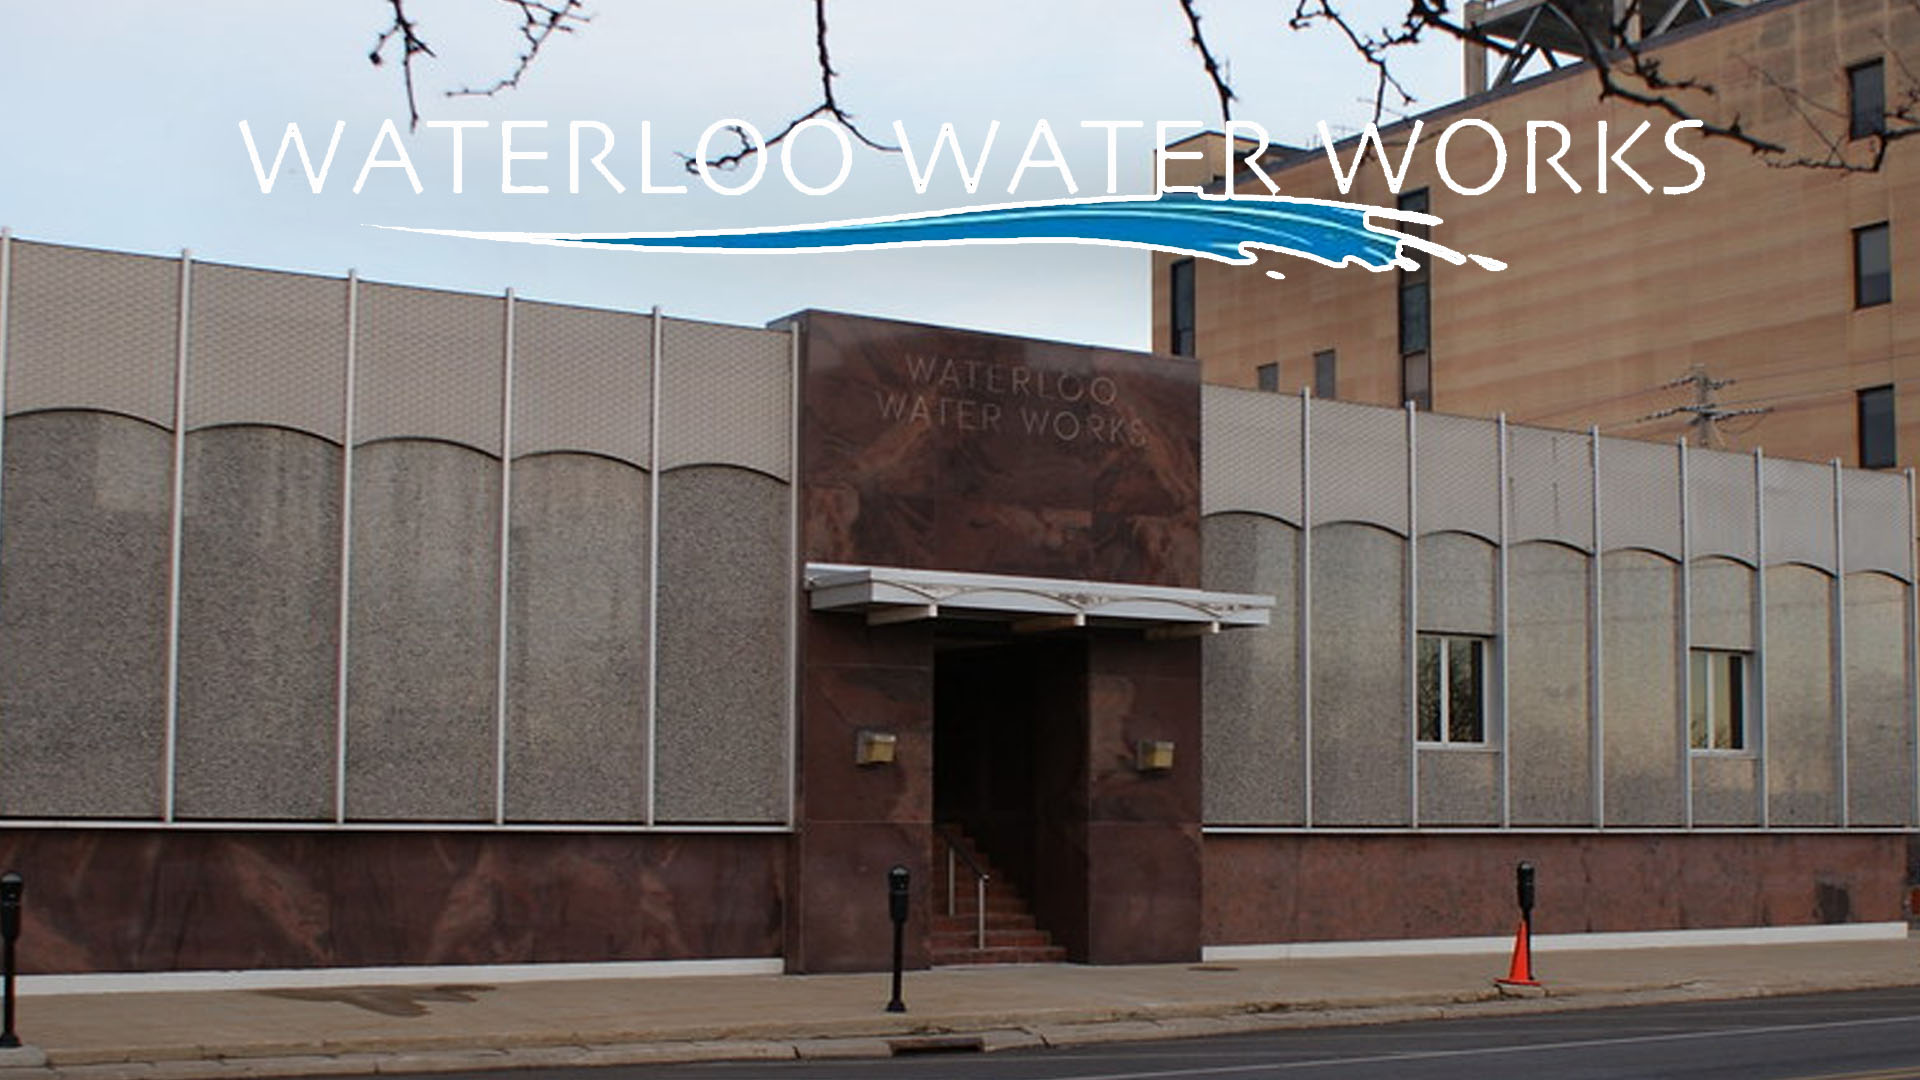 Waterloo Water Works